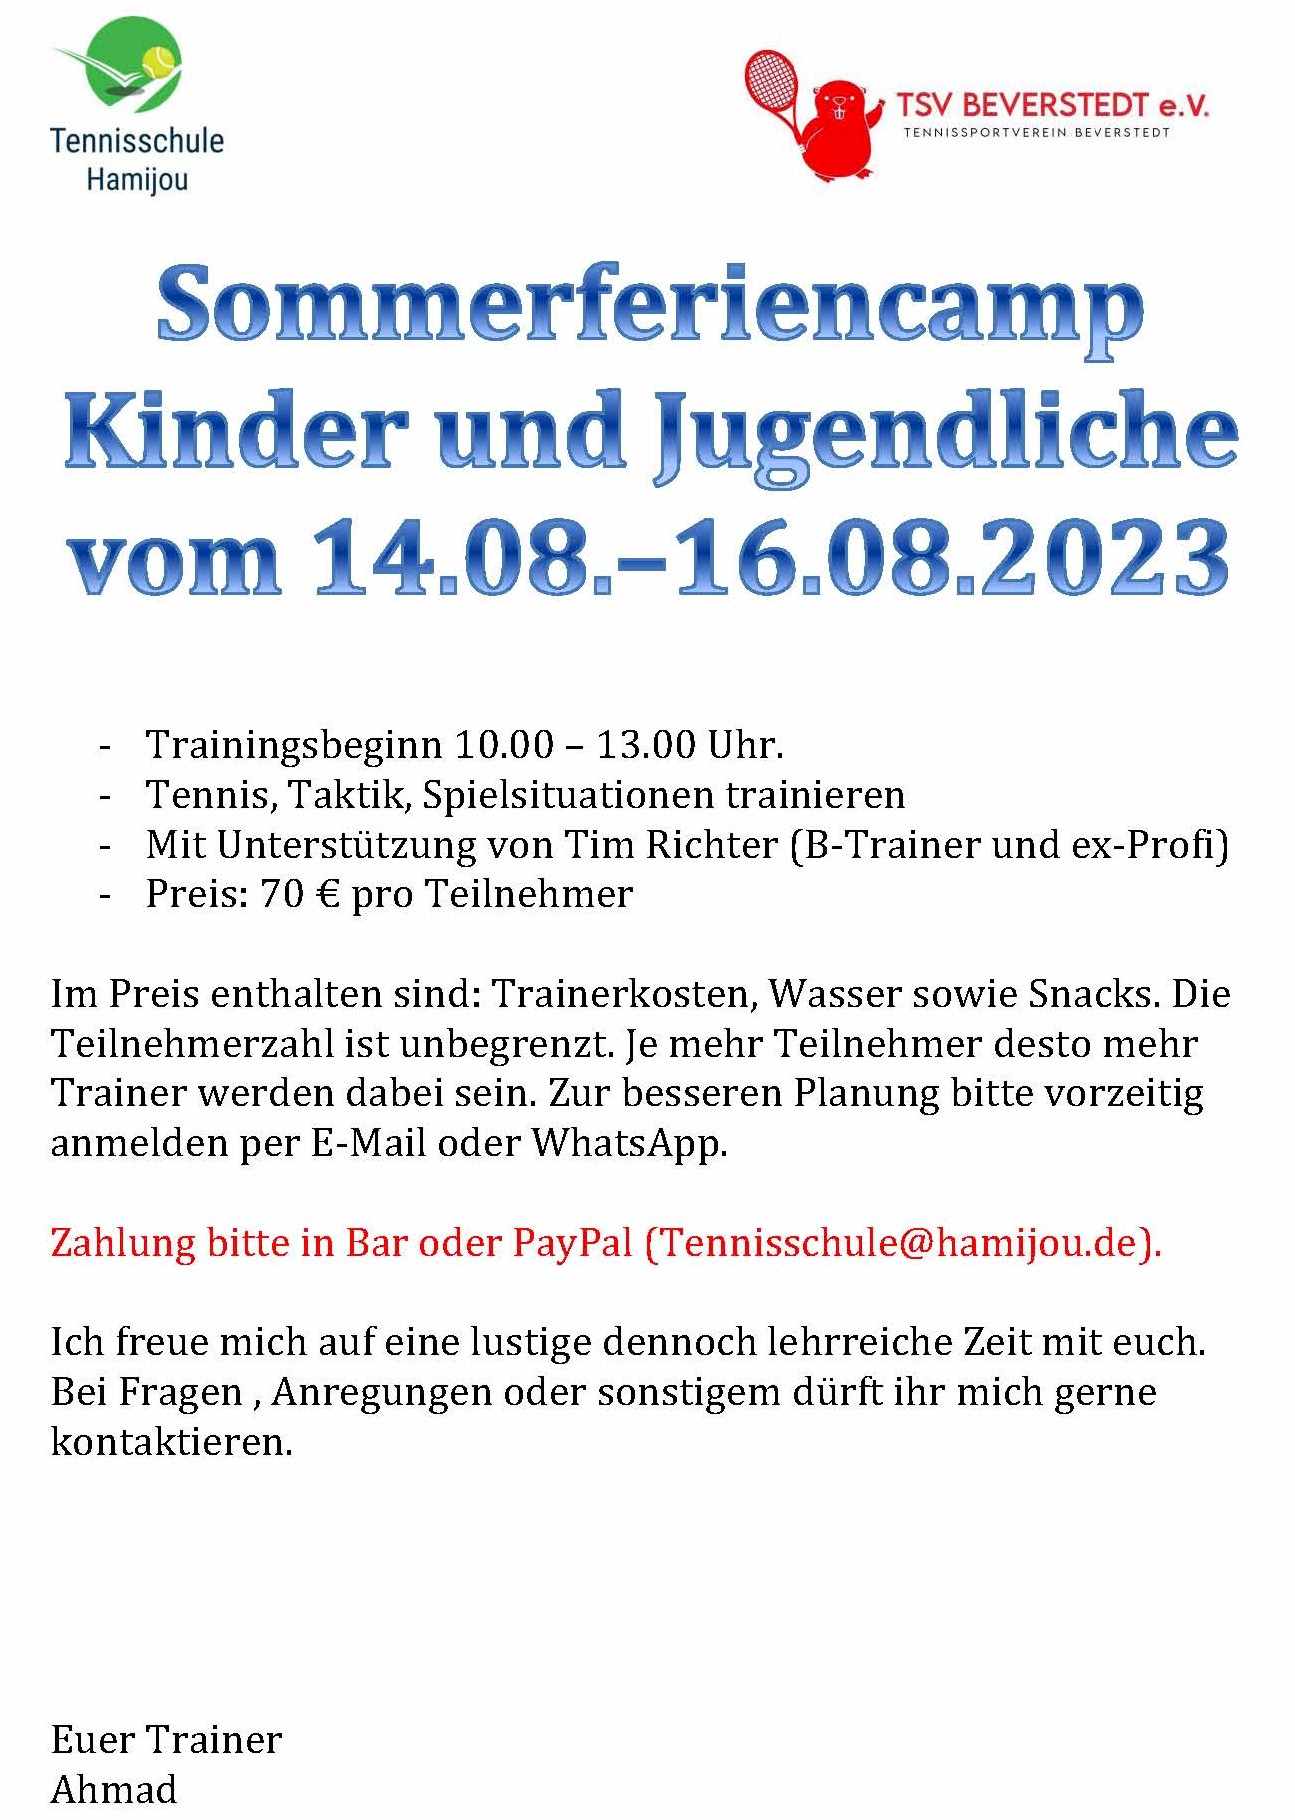 Sommercamp für Kinder und Jugendliche